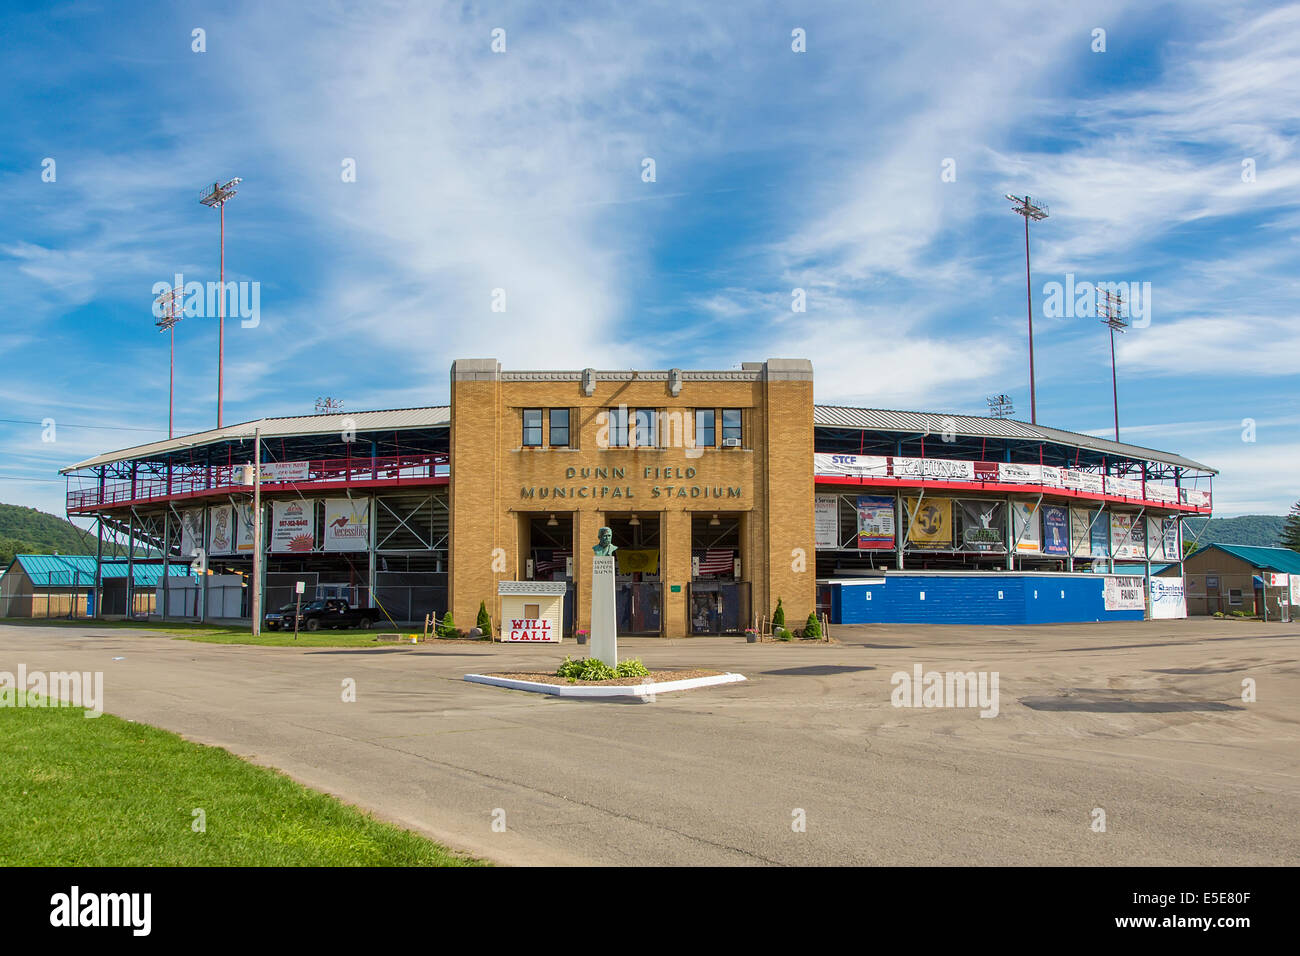 Dunn Field baseball stadium hone of The Elmira Pioneers in Elmira New York Stock Photo